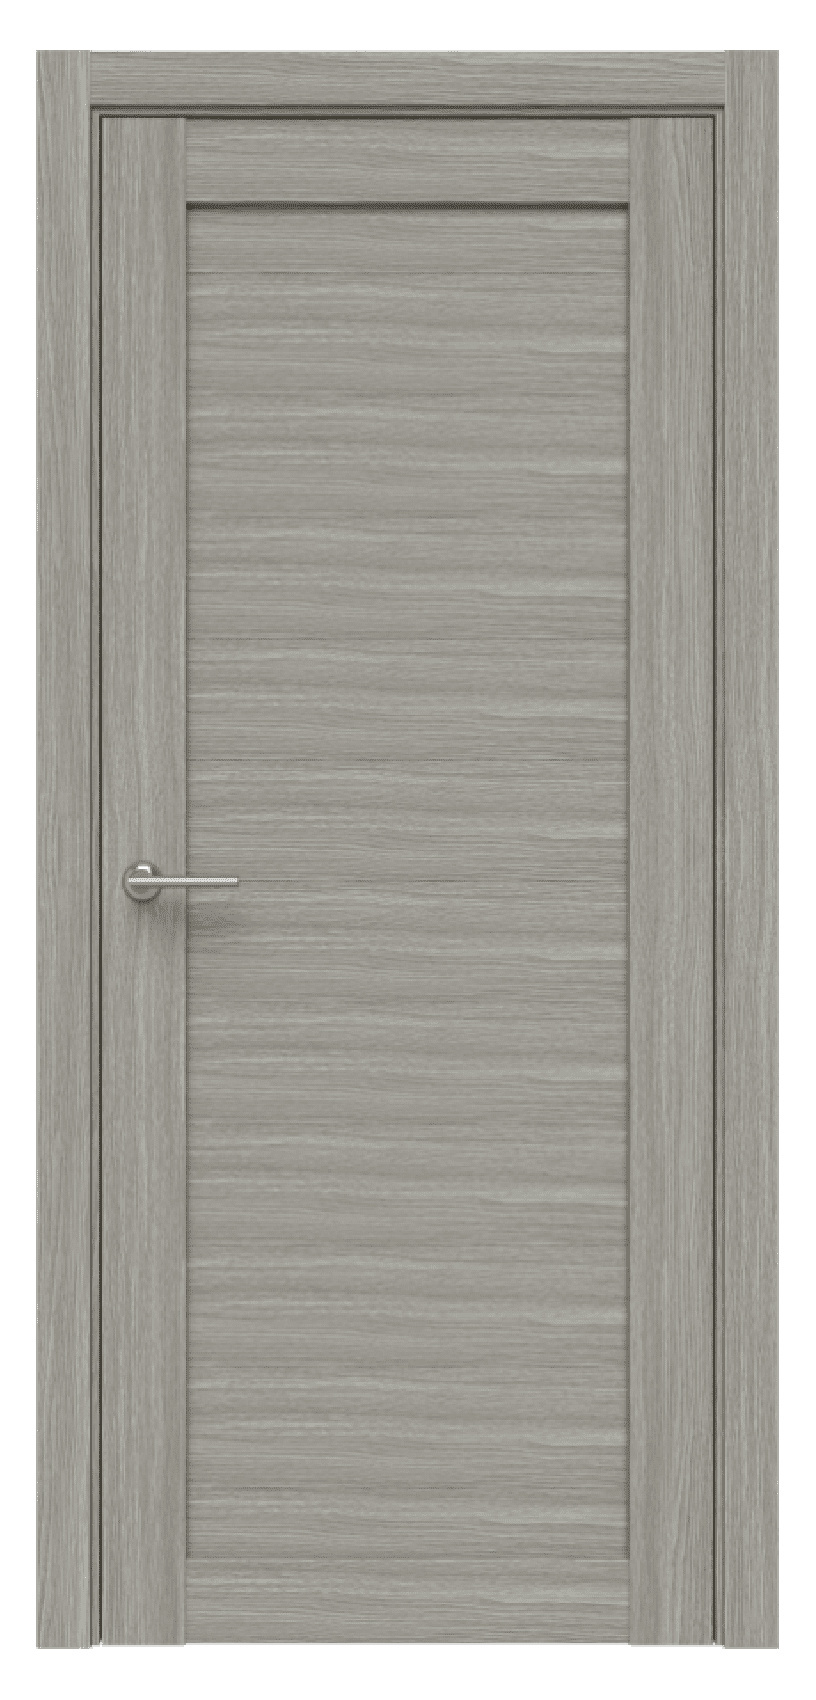 Questdoors Межкомнатная дверь Q50, арт. 17477 - фото №1